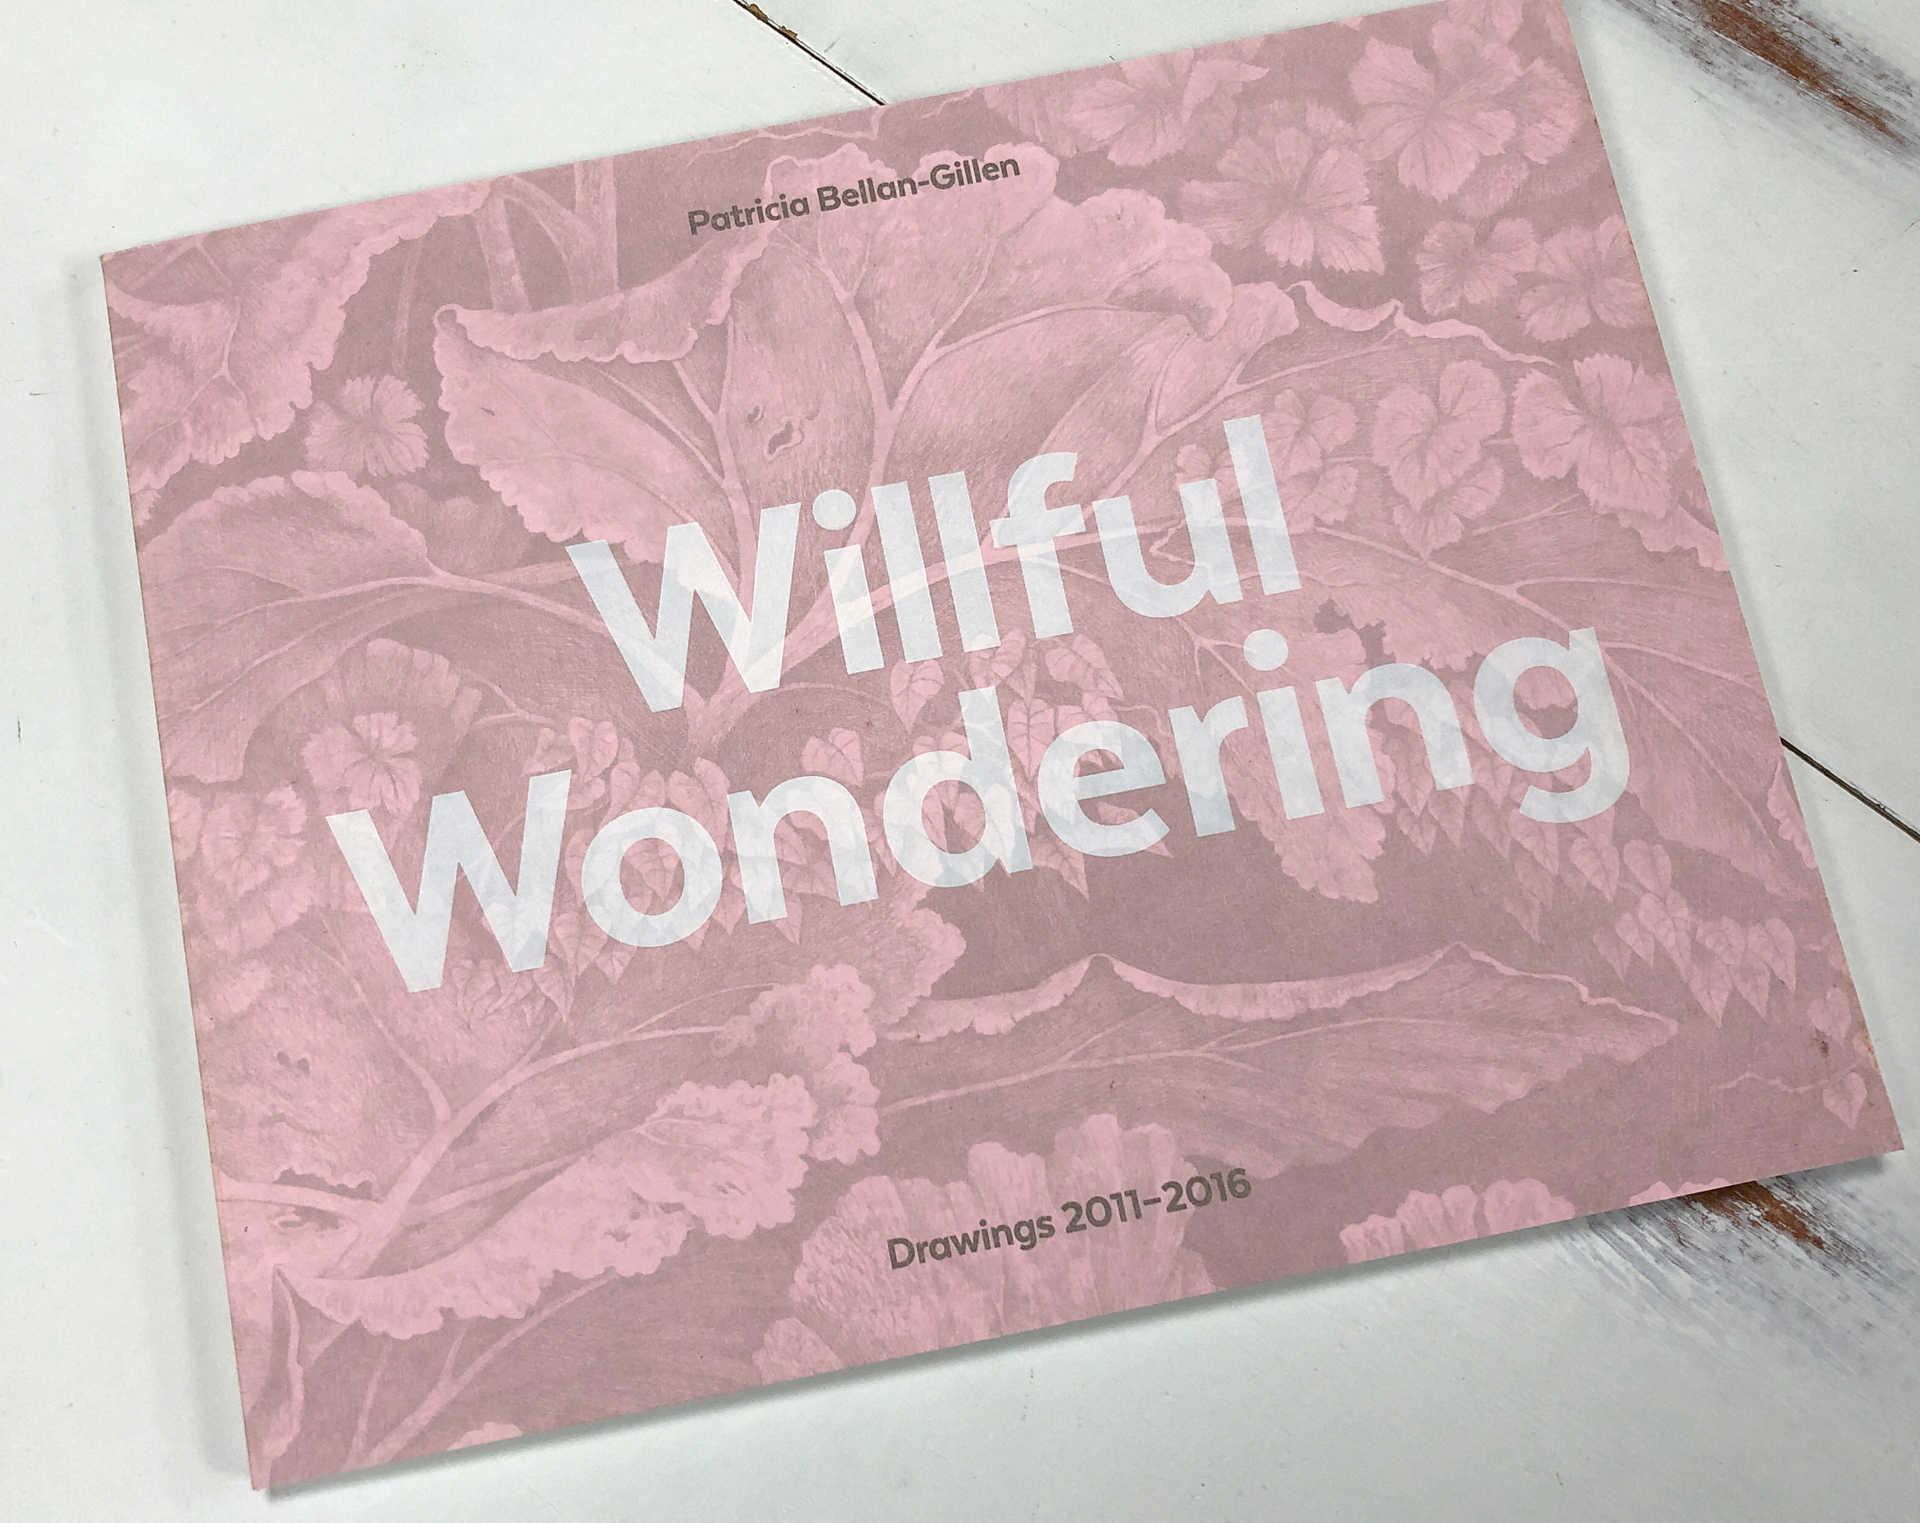 Willful Wonderings, Drawings 2011-2016 by Patricia Bellan-Gillen